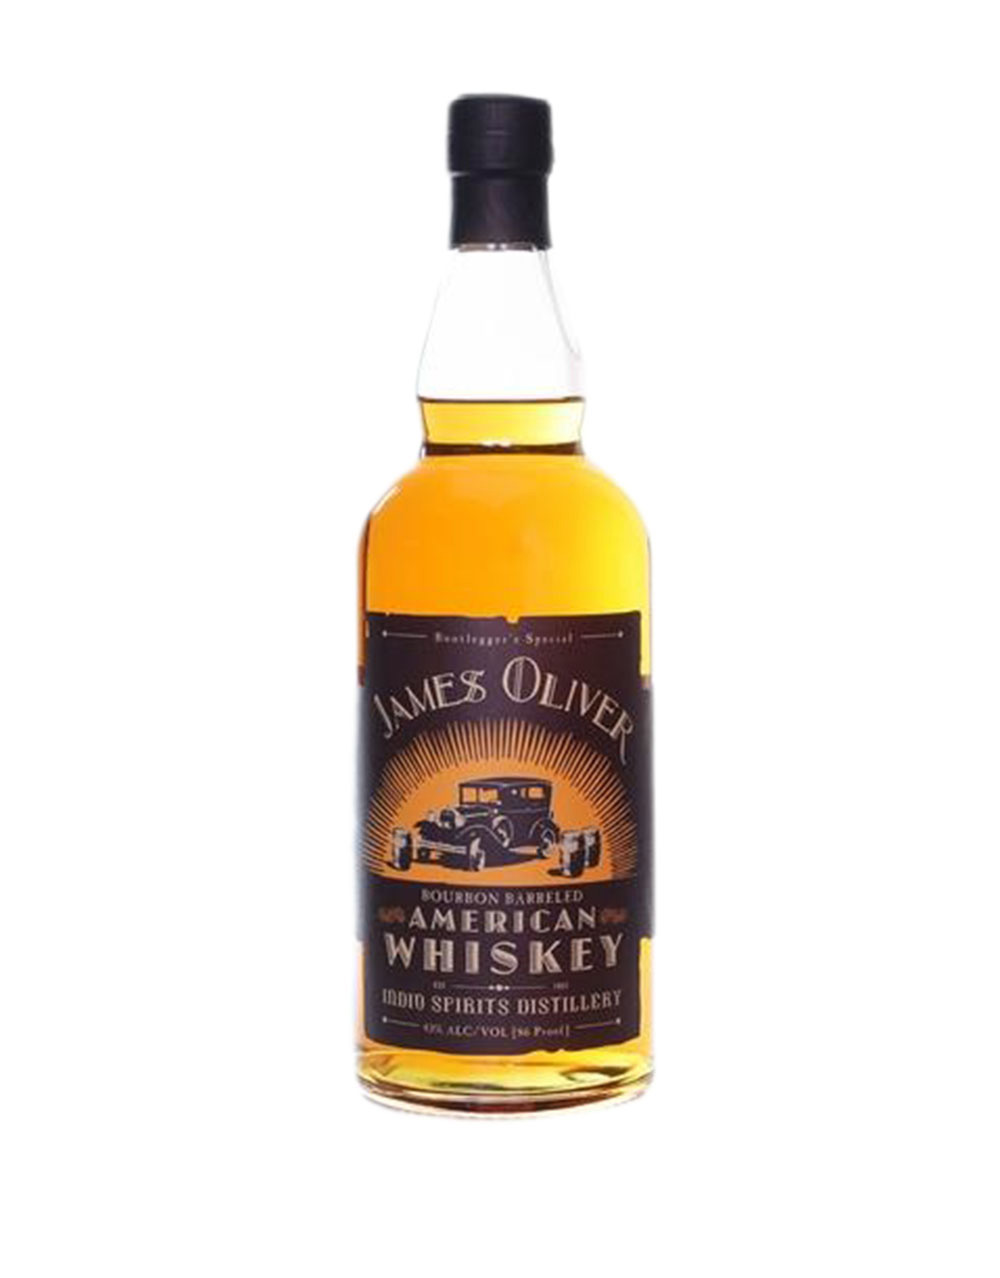 James Oliver Bourbon Barreled American Whiskey